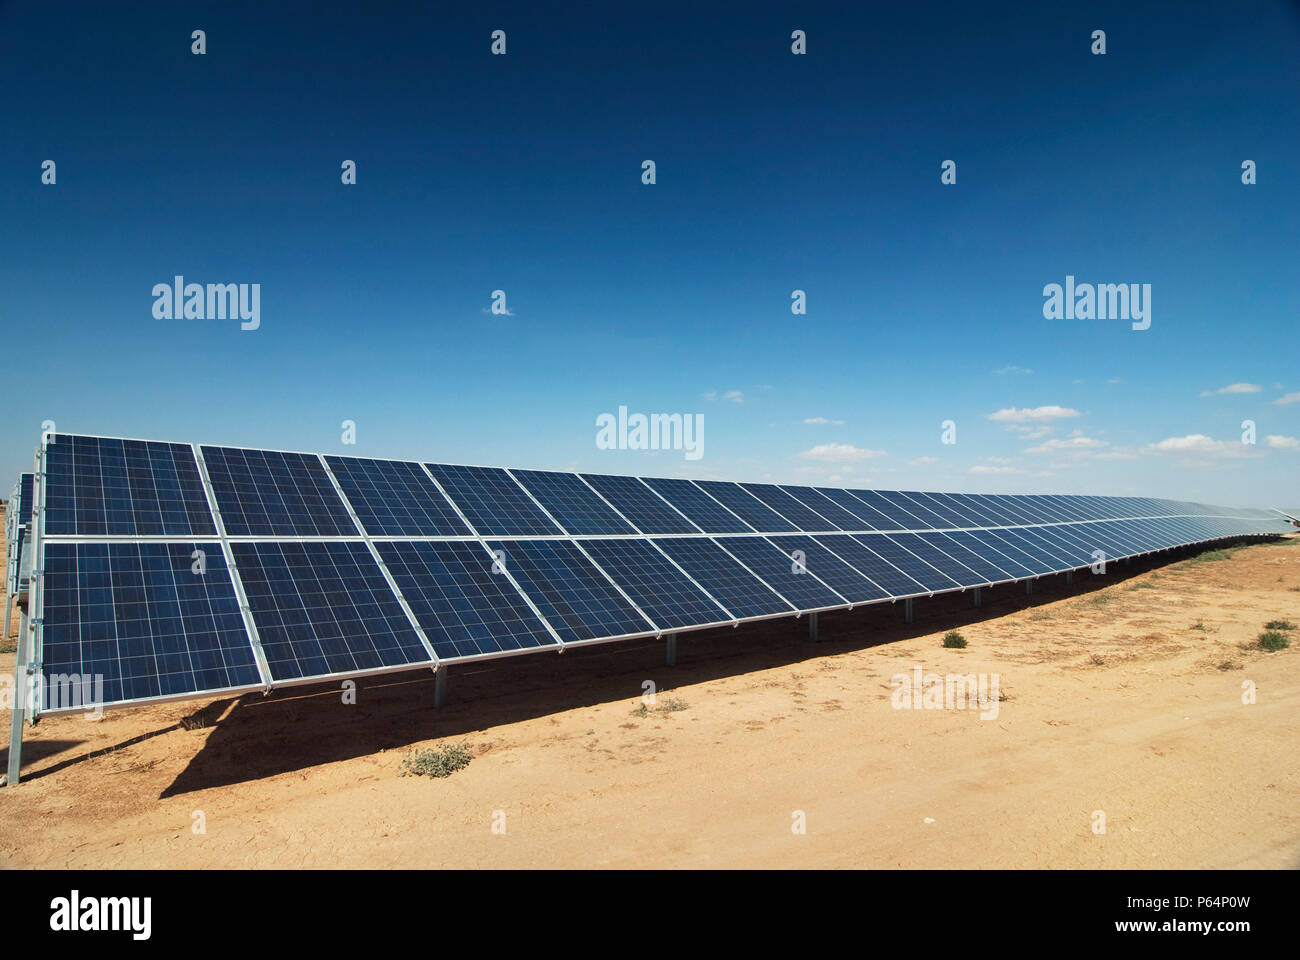 OcaÐa Planta solar : centrale photovoltaïque à grande échelle contenant des panneaux solaires à Ocana, Espagne Banque D'Images